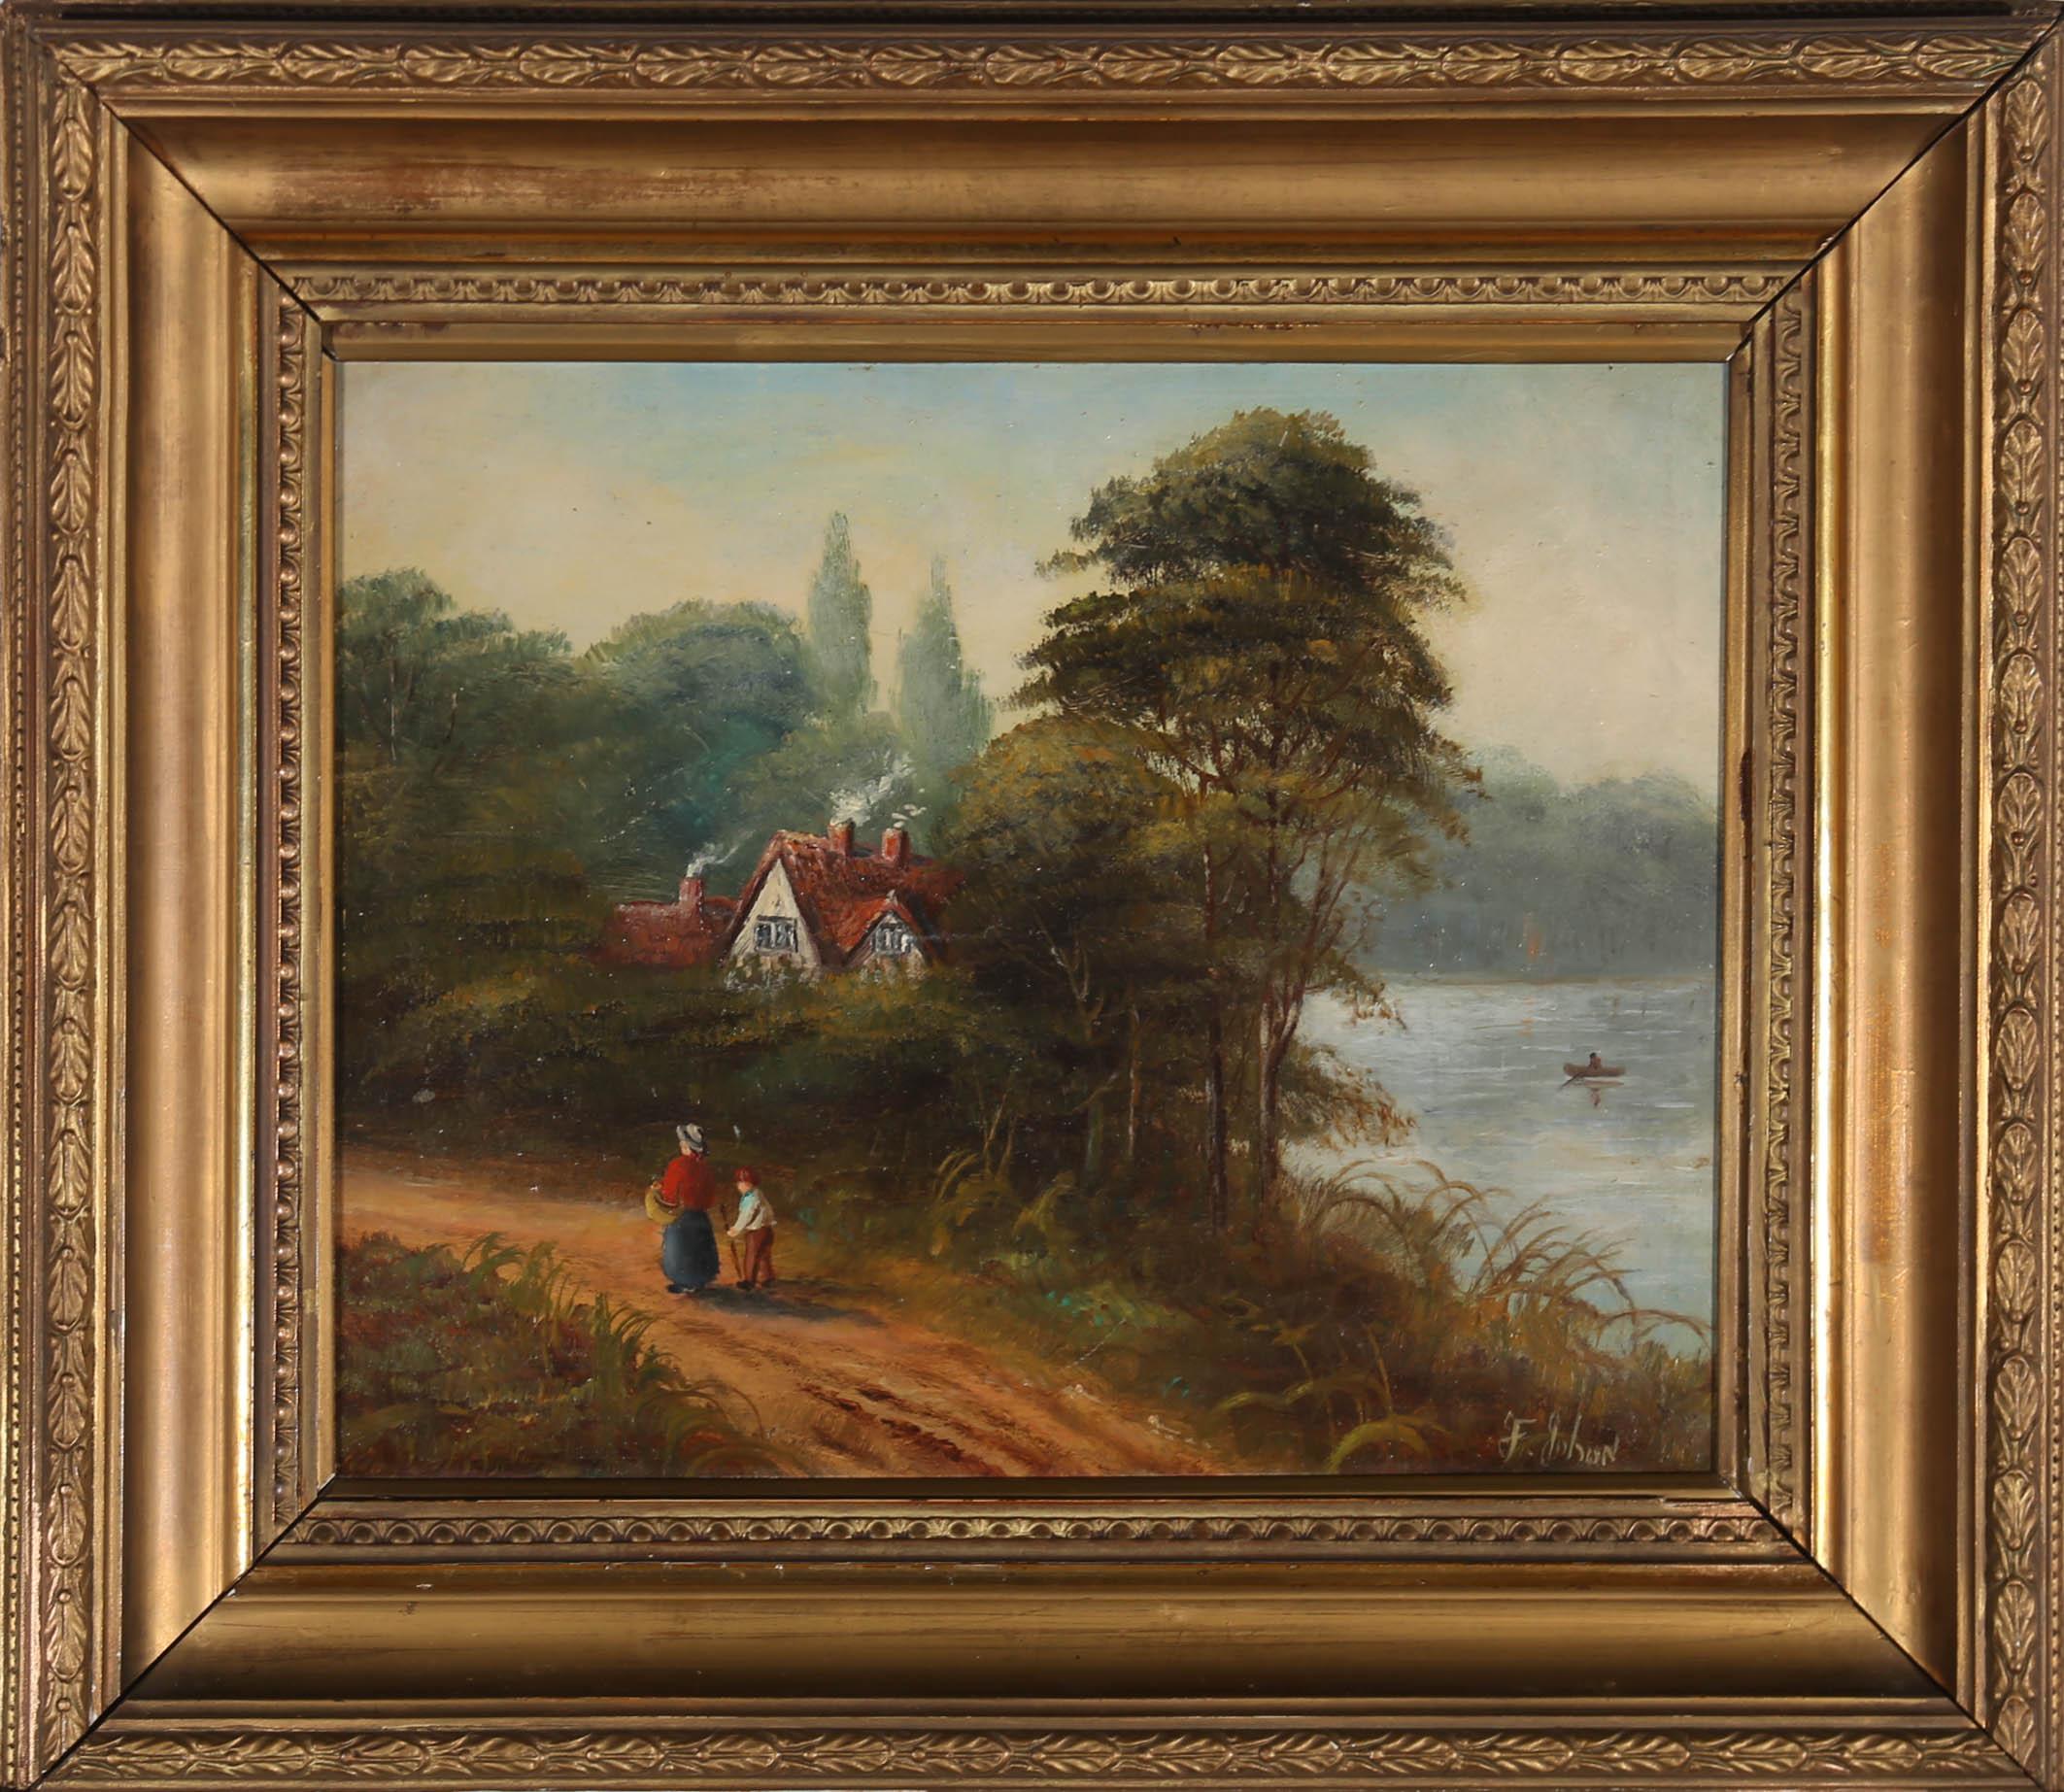 F. Johan - Framed Late 19th Century Oil, Rural Landscape 1